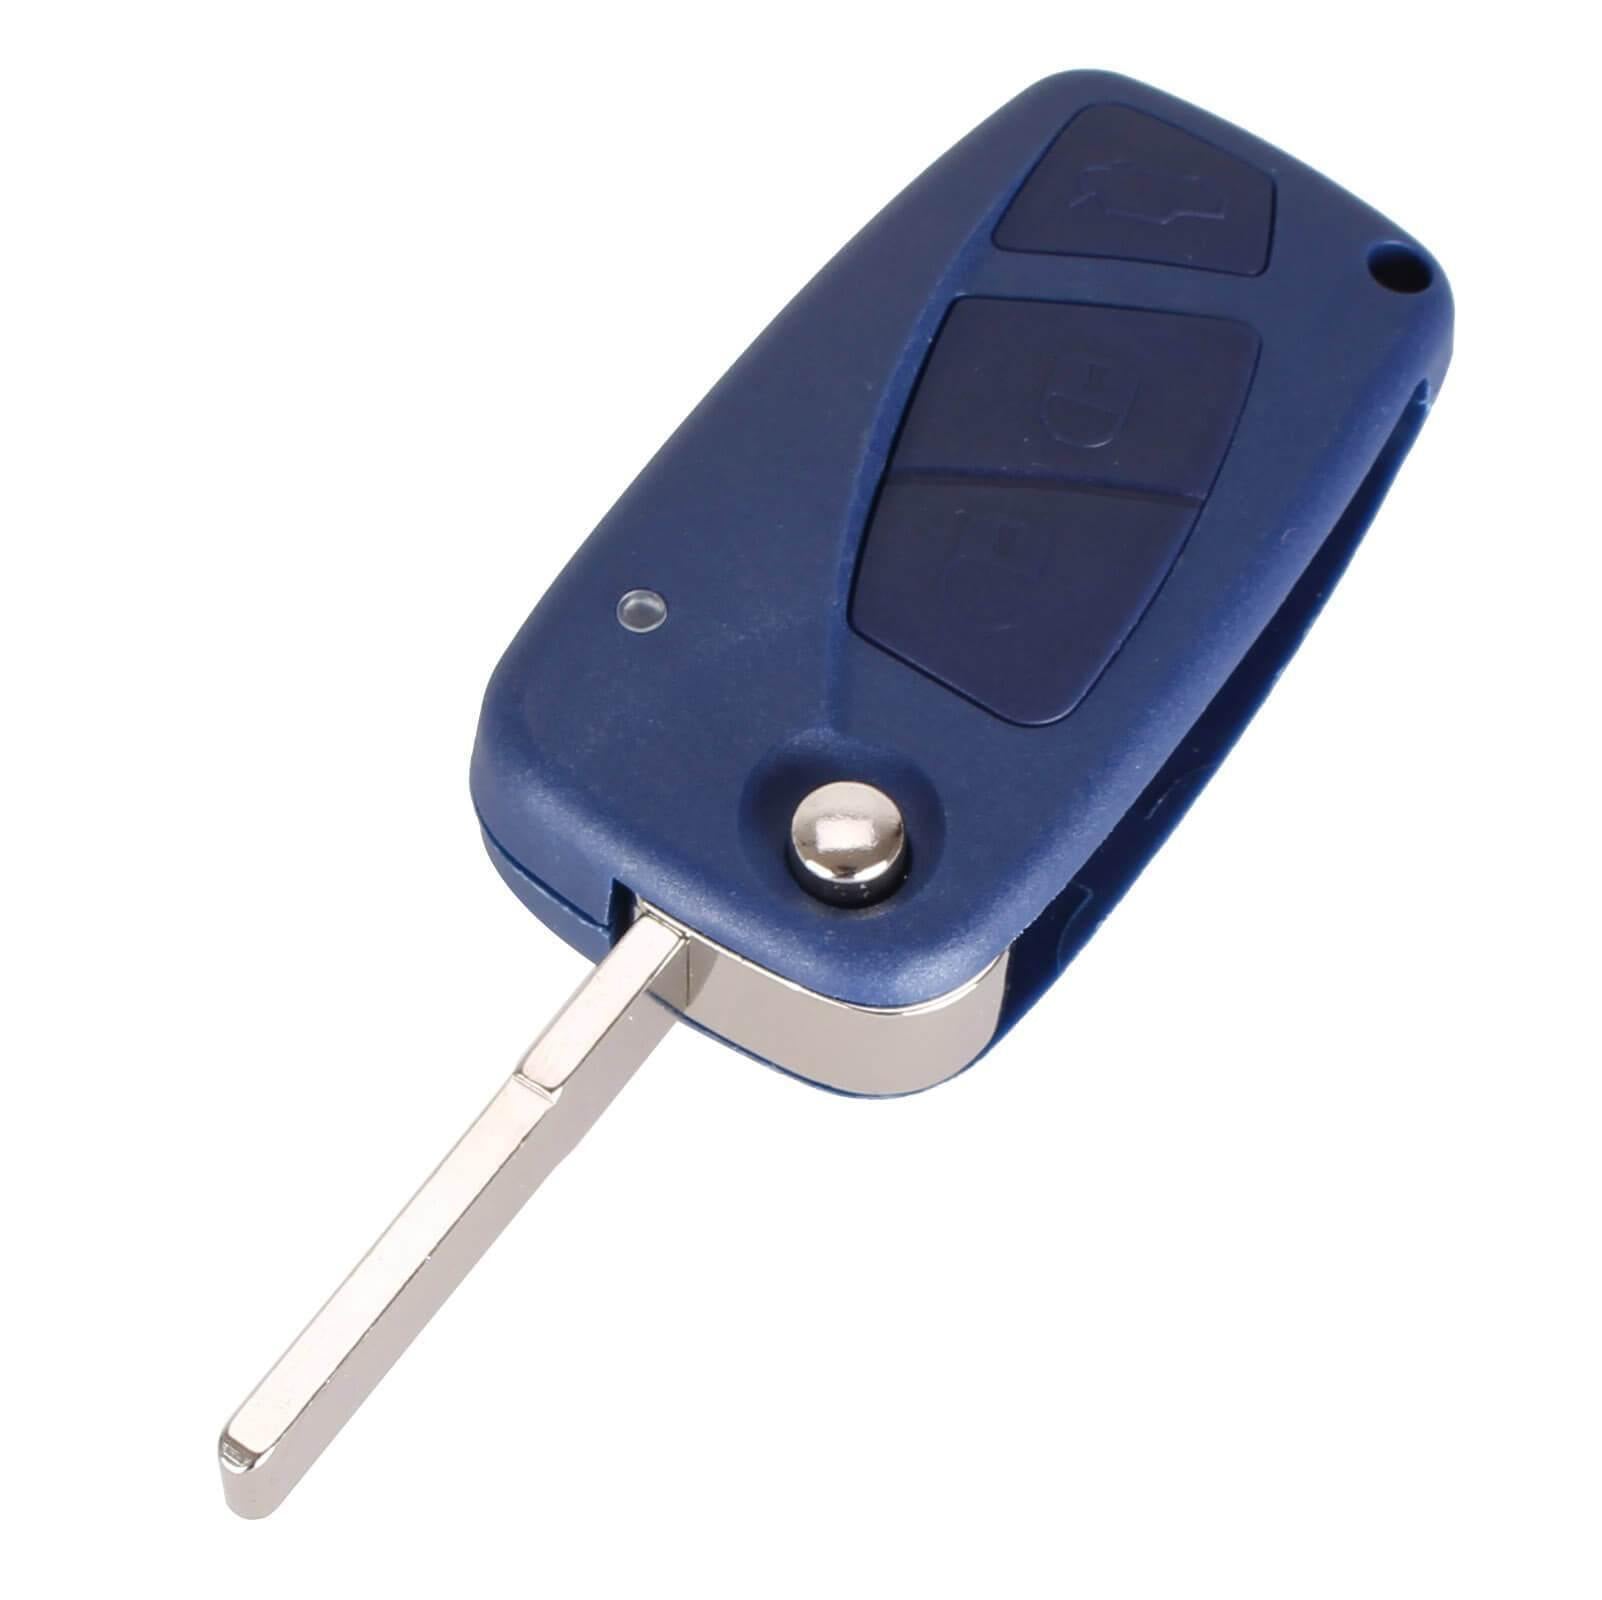 Kék színű, 3 gombos Ford kulcsház, bicskakulcs nyers kulcsszárral.